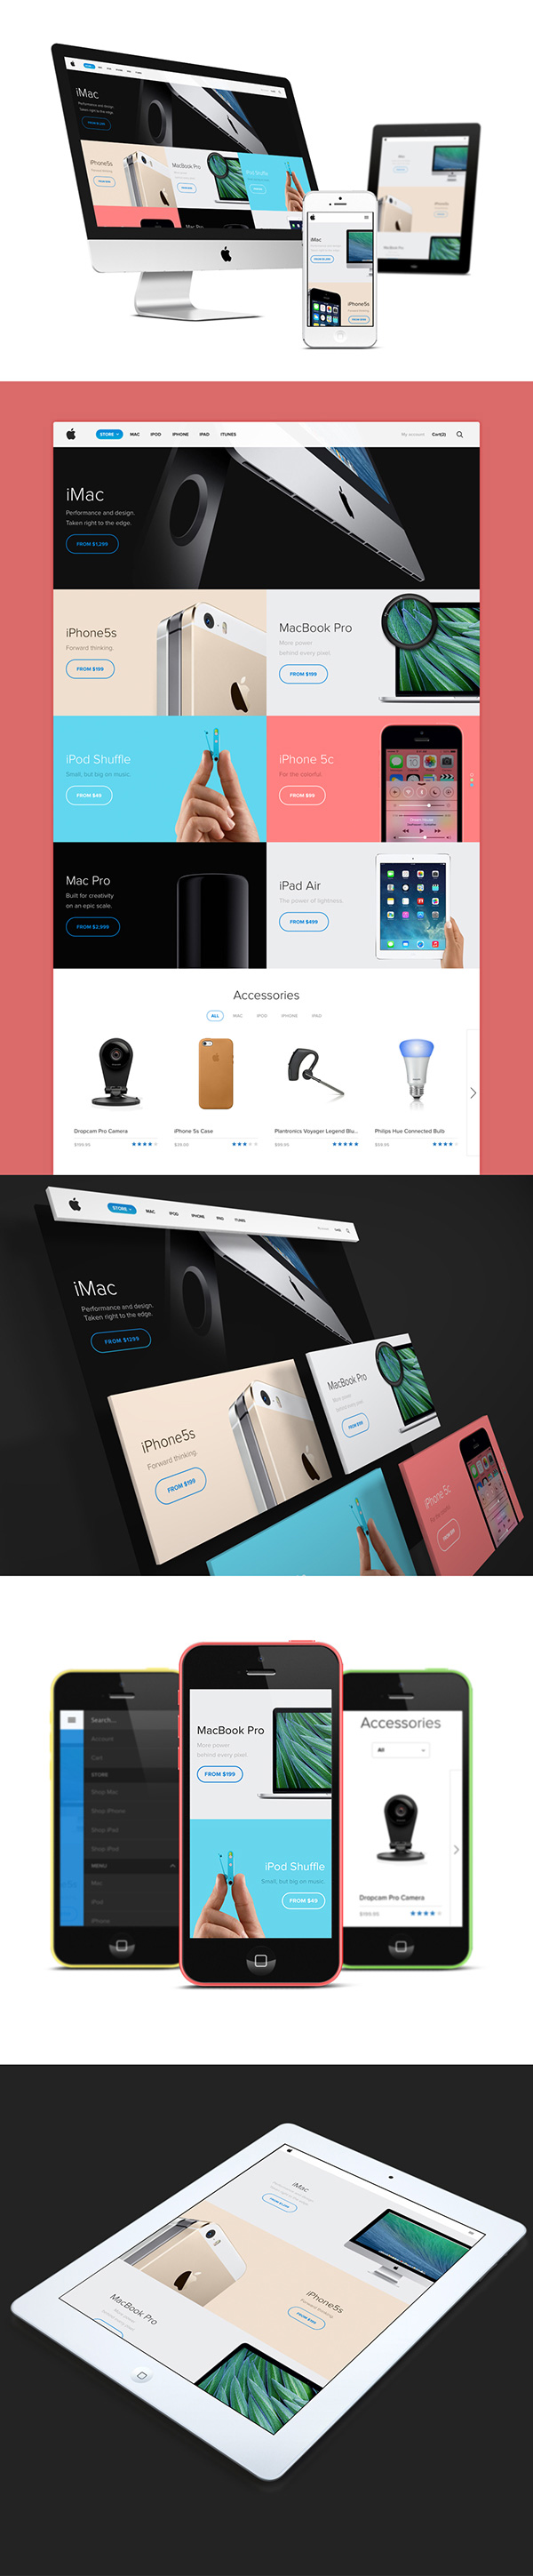 25个著名的概念重设计网站&APP设计欣赏Apple-Store-Redesign-14113919